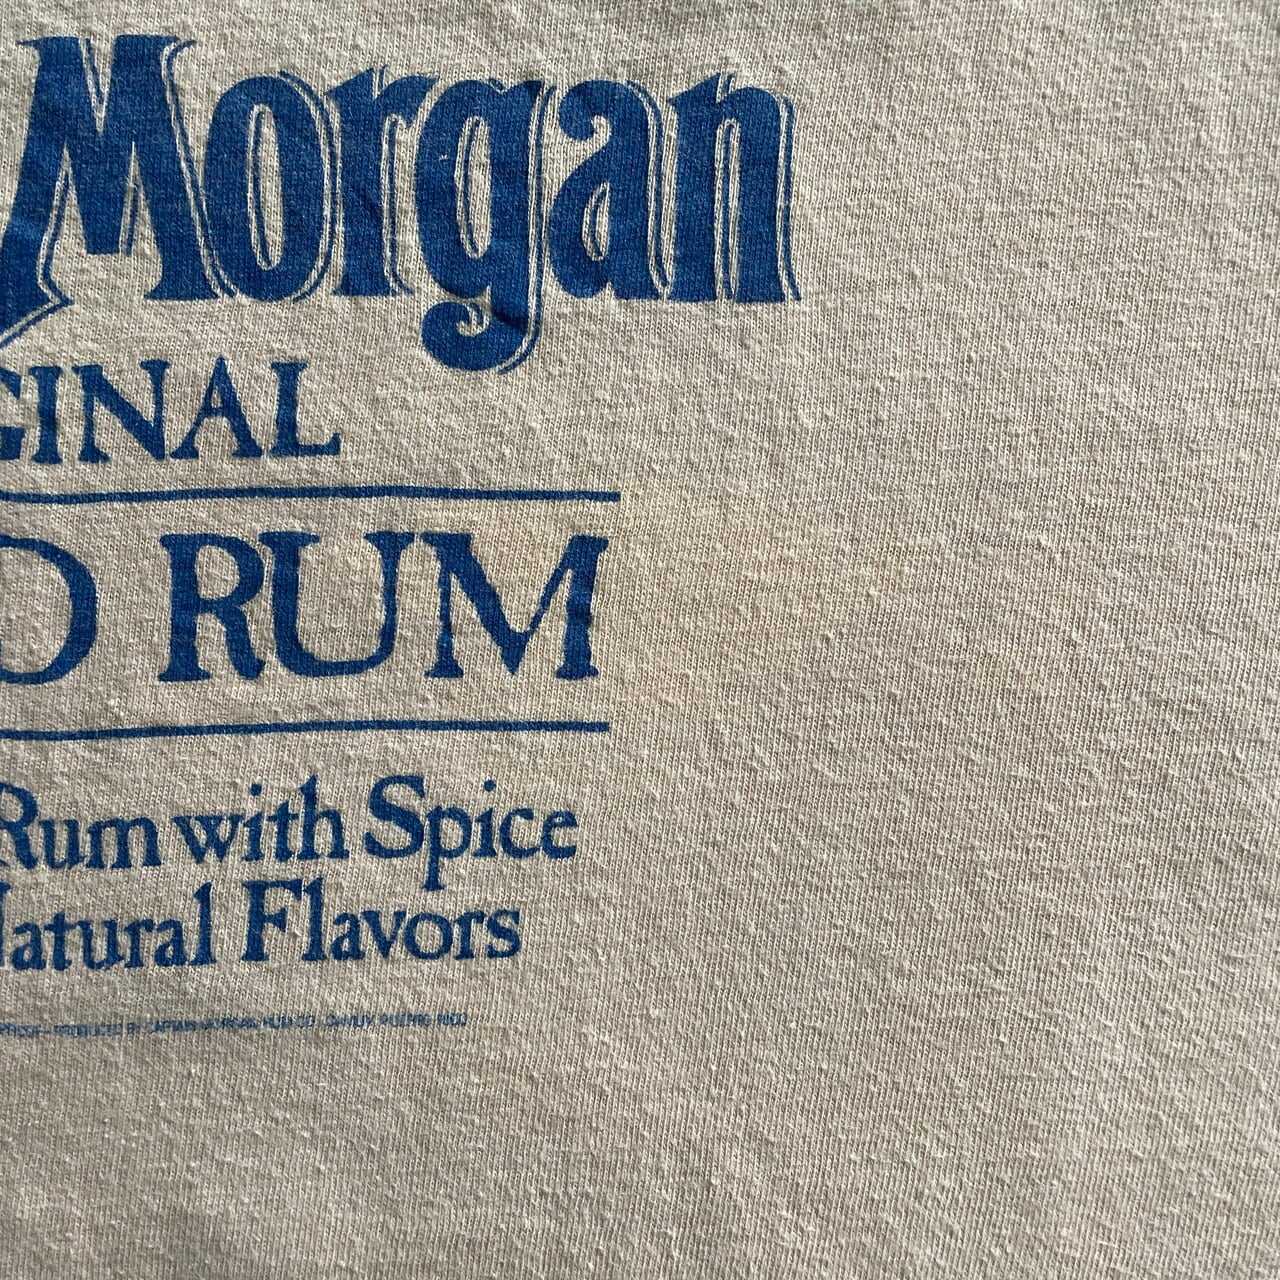 企業 Captain Morgan 刺繍ブルゾン L 酒 ラム